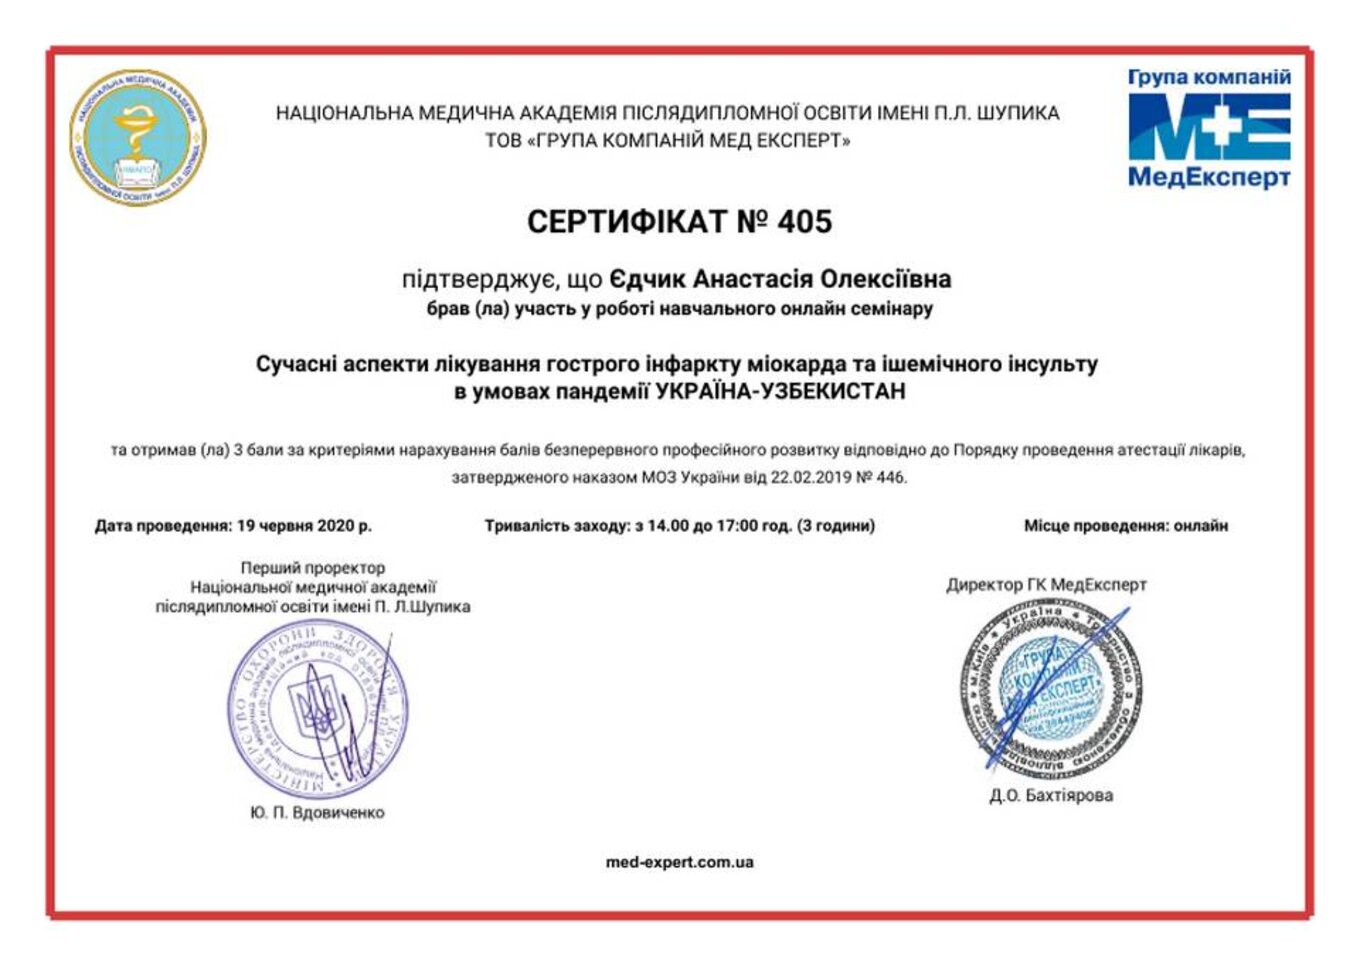 certificates/yedchik-anastasiya-oleksiyivna/erc-edchik-cert-78.jpg